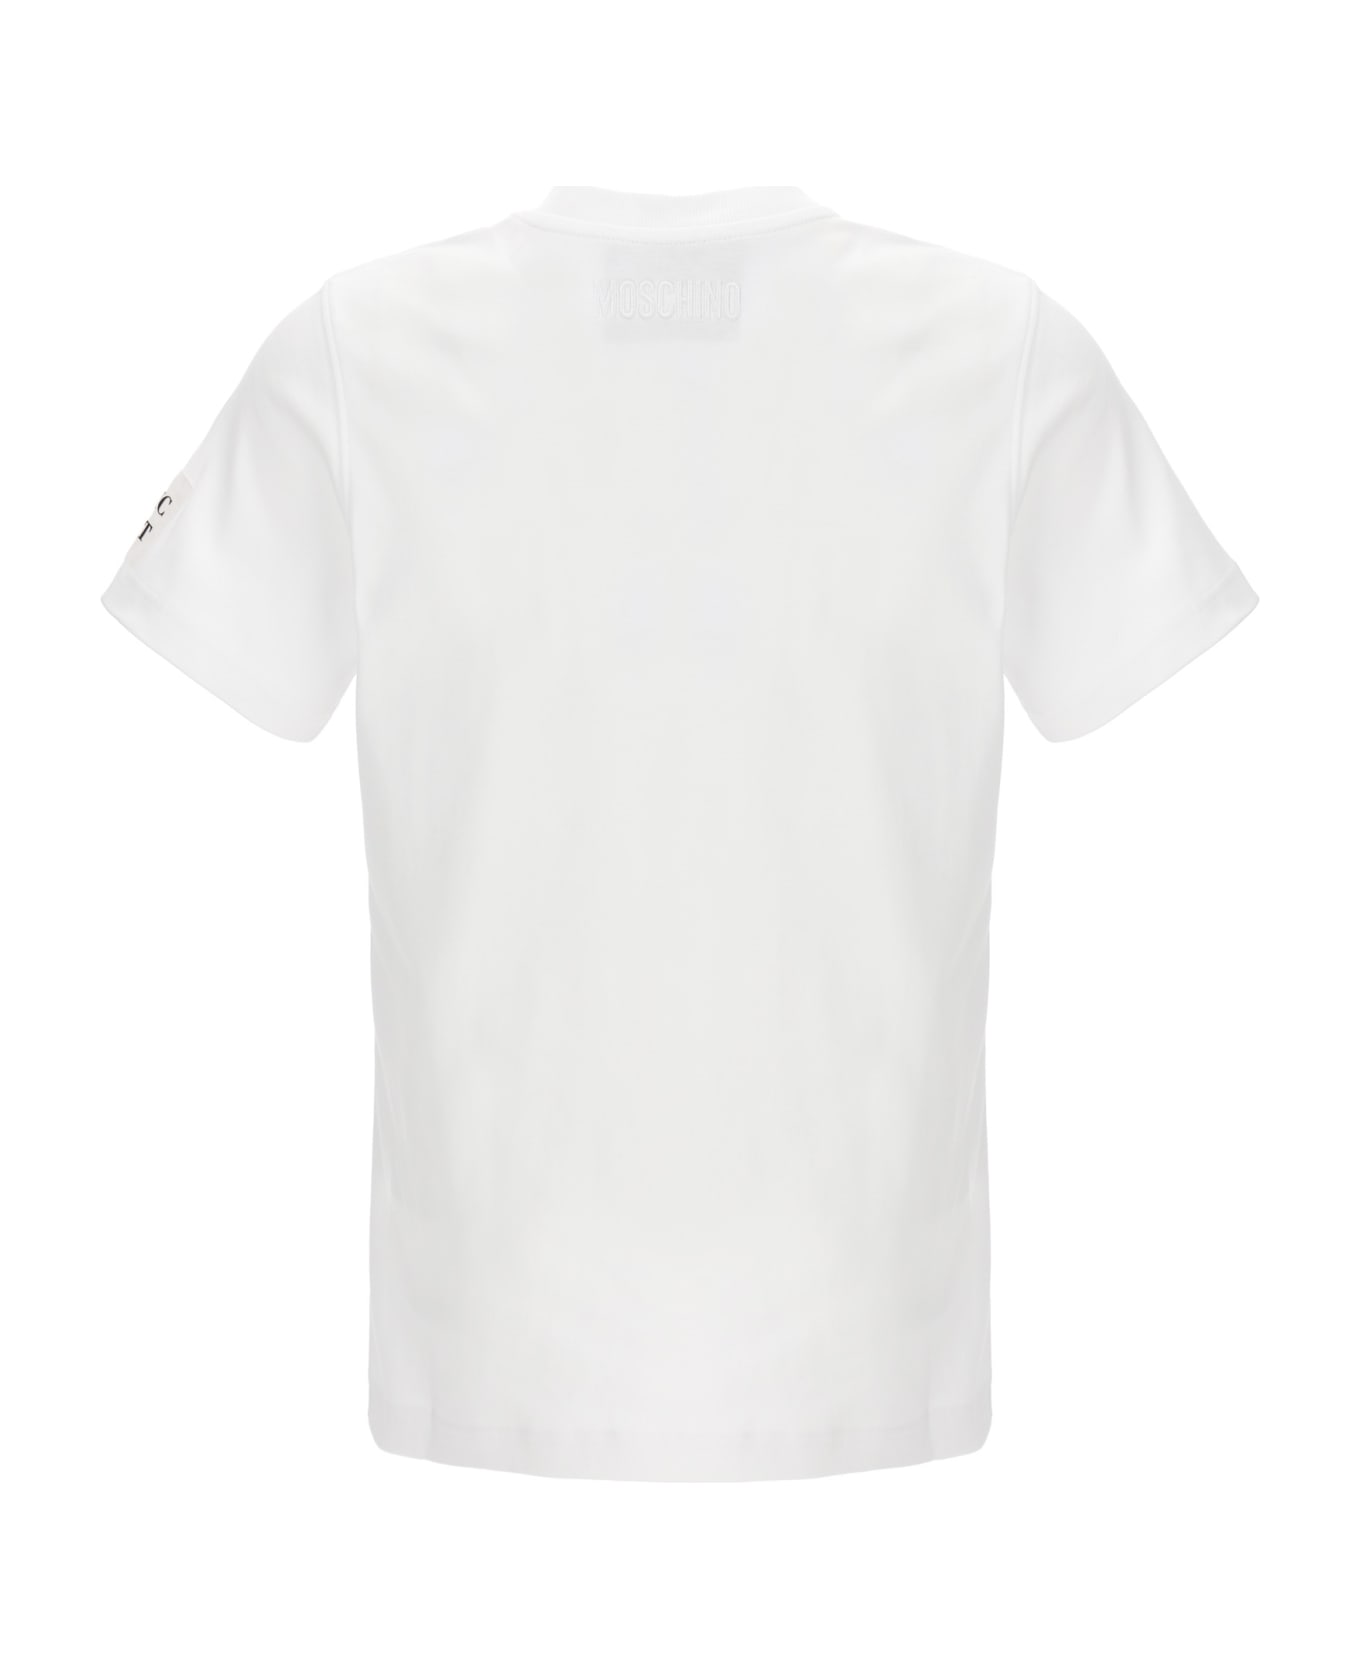 Moschino 'basic' T-shirt - White